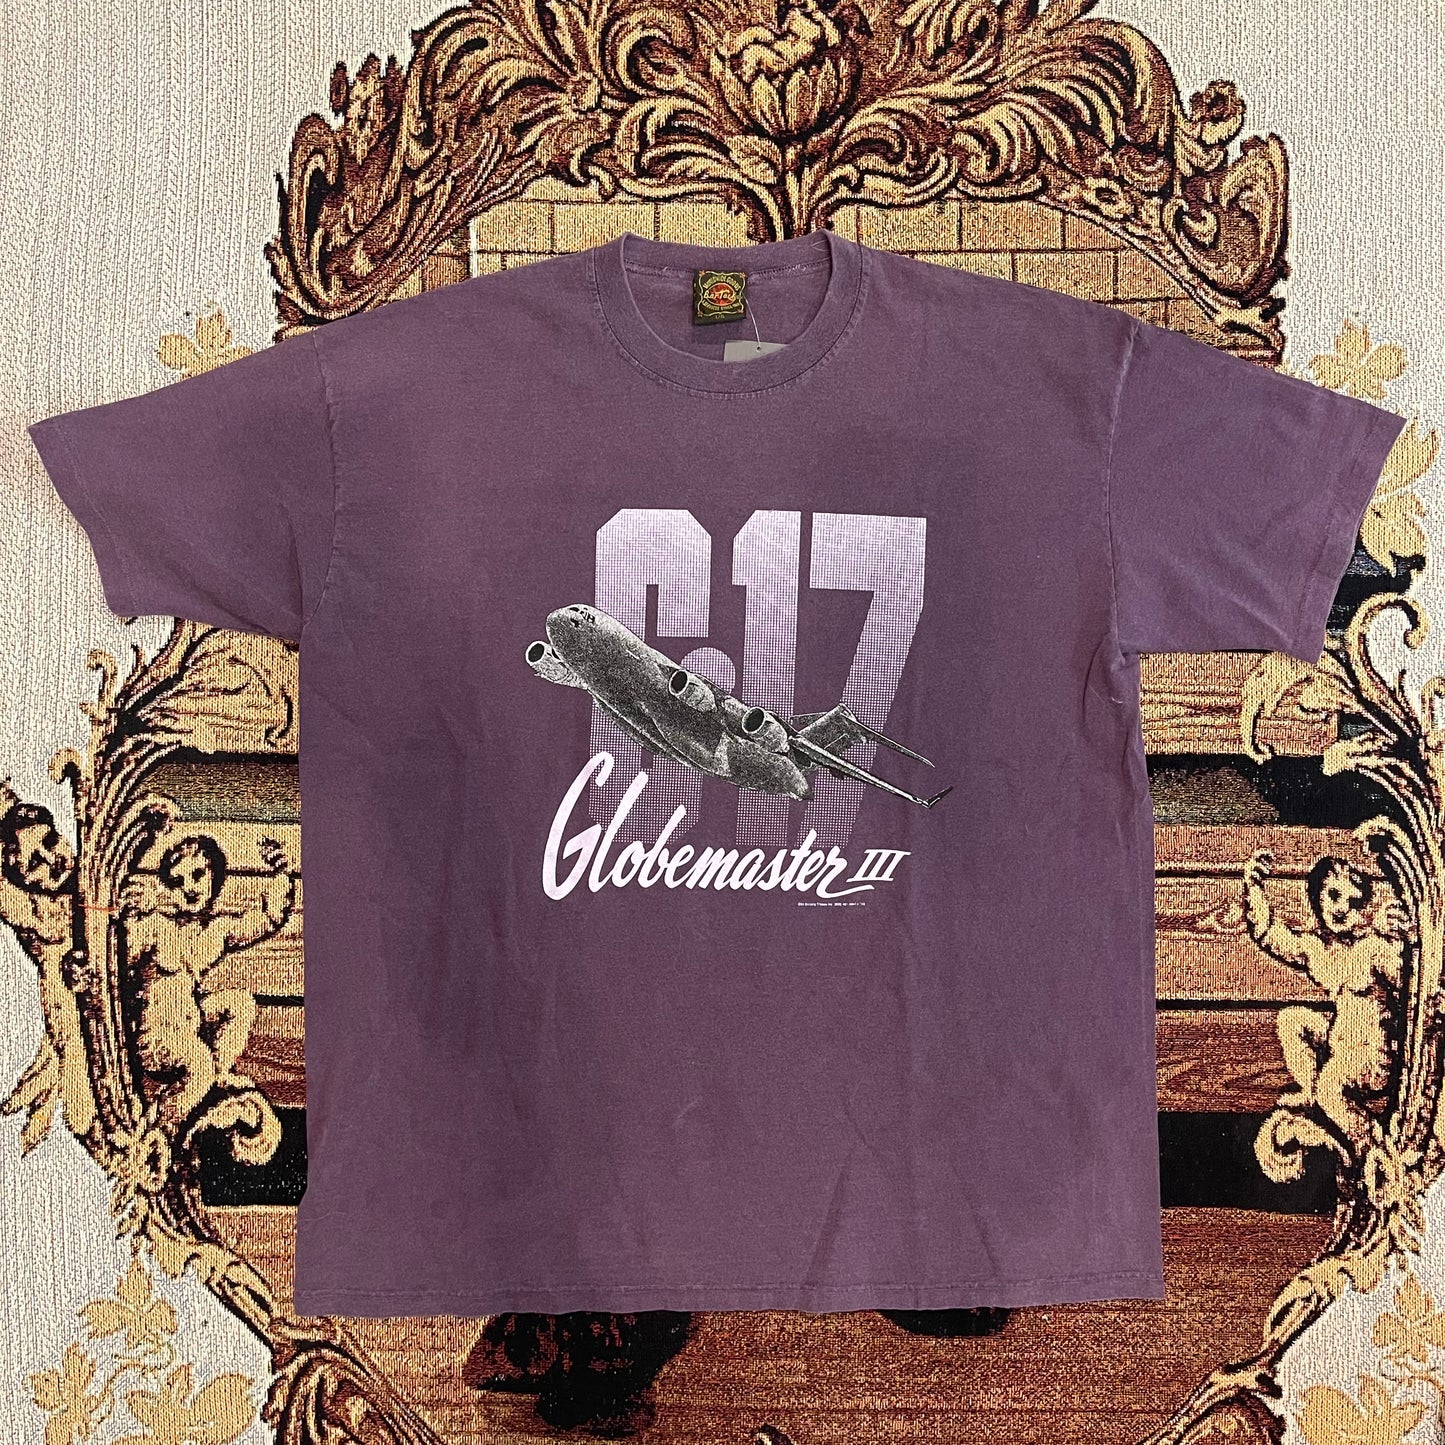 Vintage C-17 Purple Tee